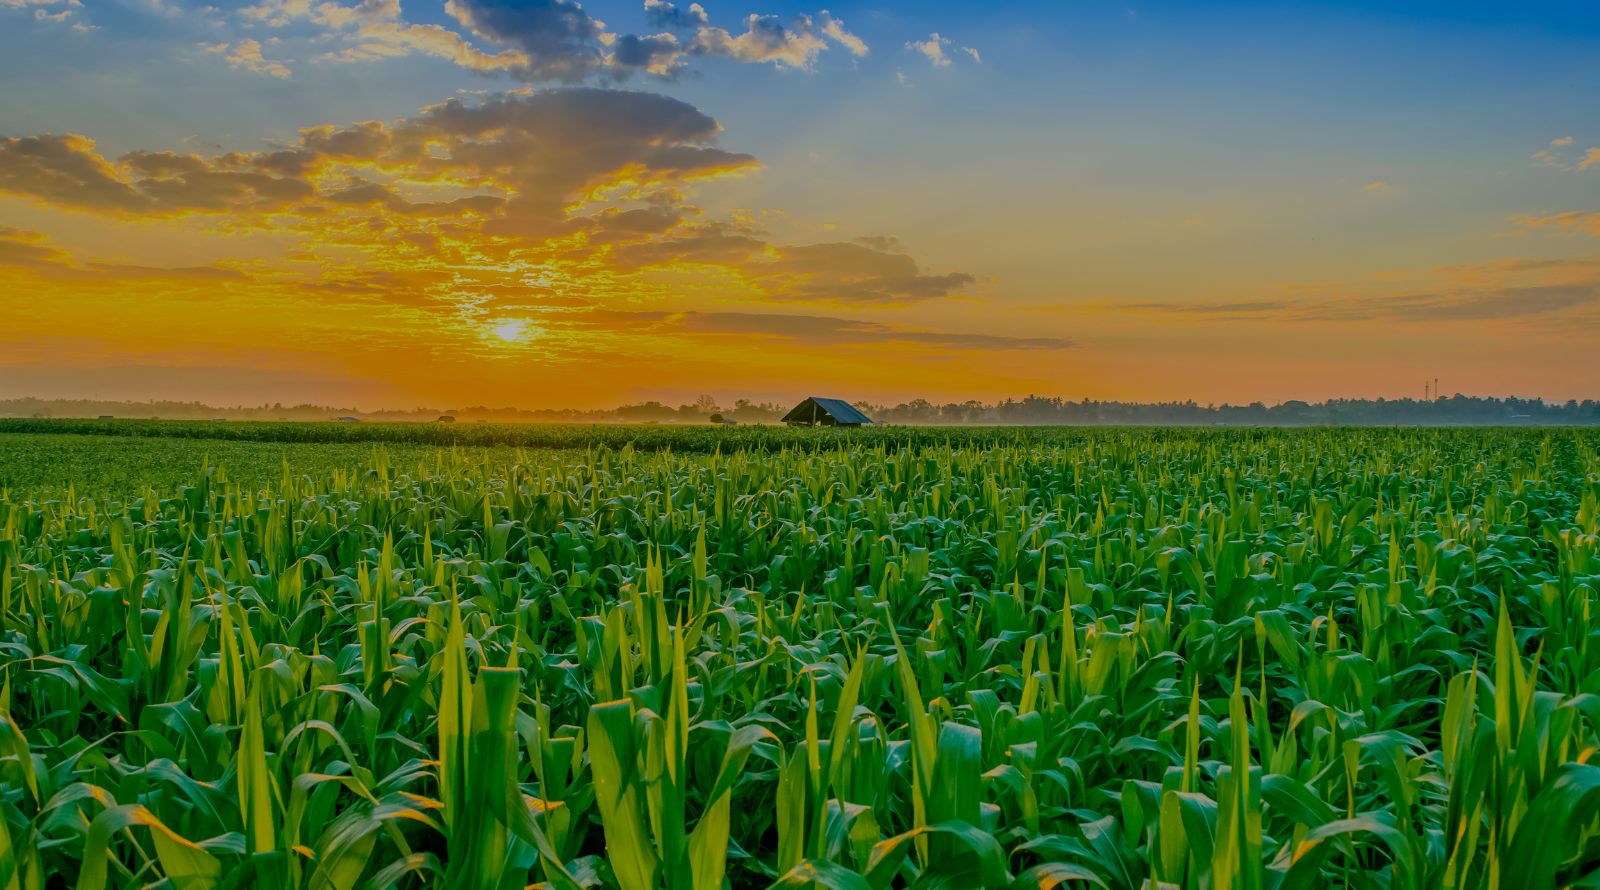 sunrise over a cornfield